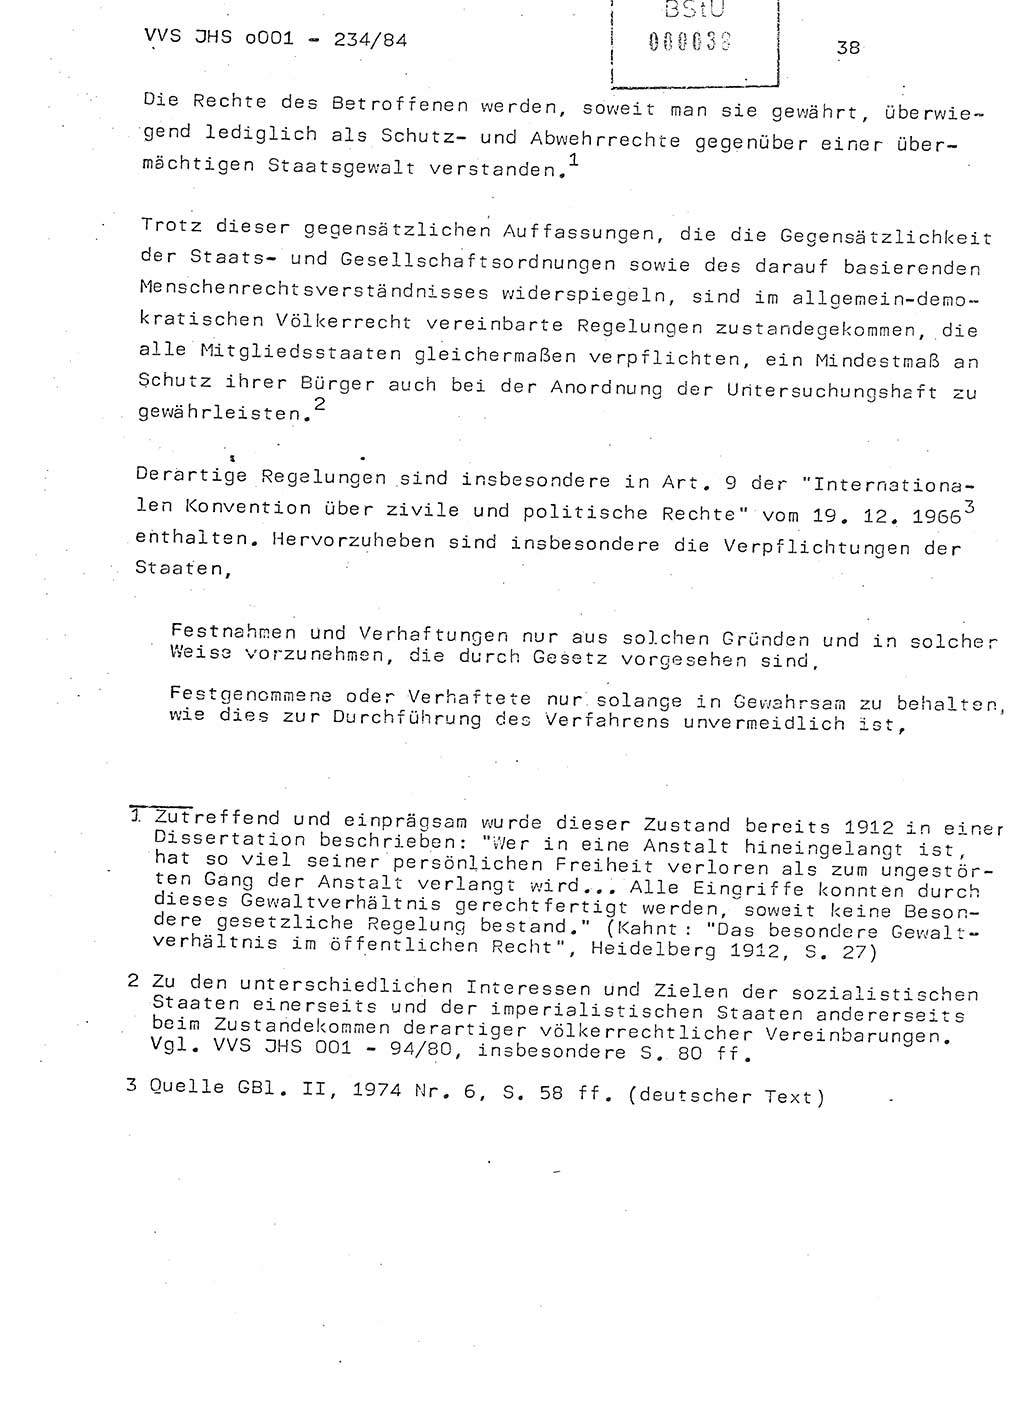 Dissertation Oberst Siegfried Rataizick (Abt. ⅩⅣ), Oberstleutnant Volkmar Heinz (Abt. ⅩⅣ), Oberstleutnant Werner Stein (HA Ⅸ), Hauptmann Heinz Conrad (JHS), Ministerium für Staatssicherheit (MfS) [Deutsche Demokratische Republik (DDR)], Juristische Hochschule (JHS), Vertrauliche Verschlußsache (VVS) o001-234/84, Potsdam 1984, Seite 38 (Diss. MfS DDR JHS VVS o001-234/84 1984, S. 38)